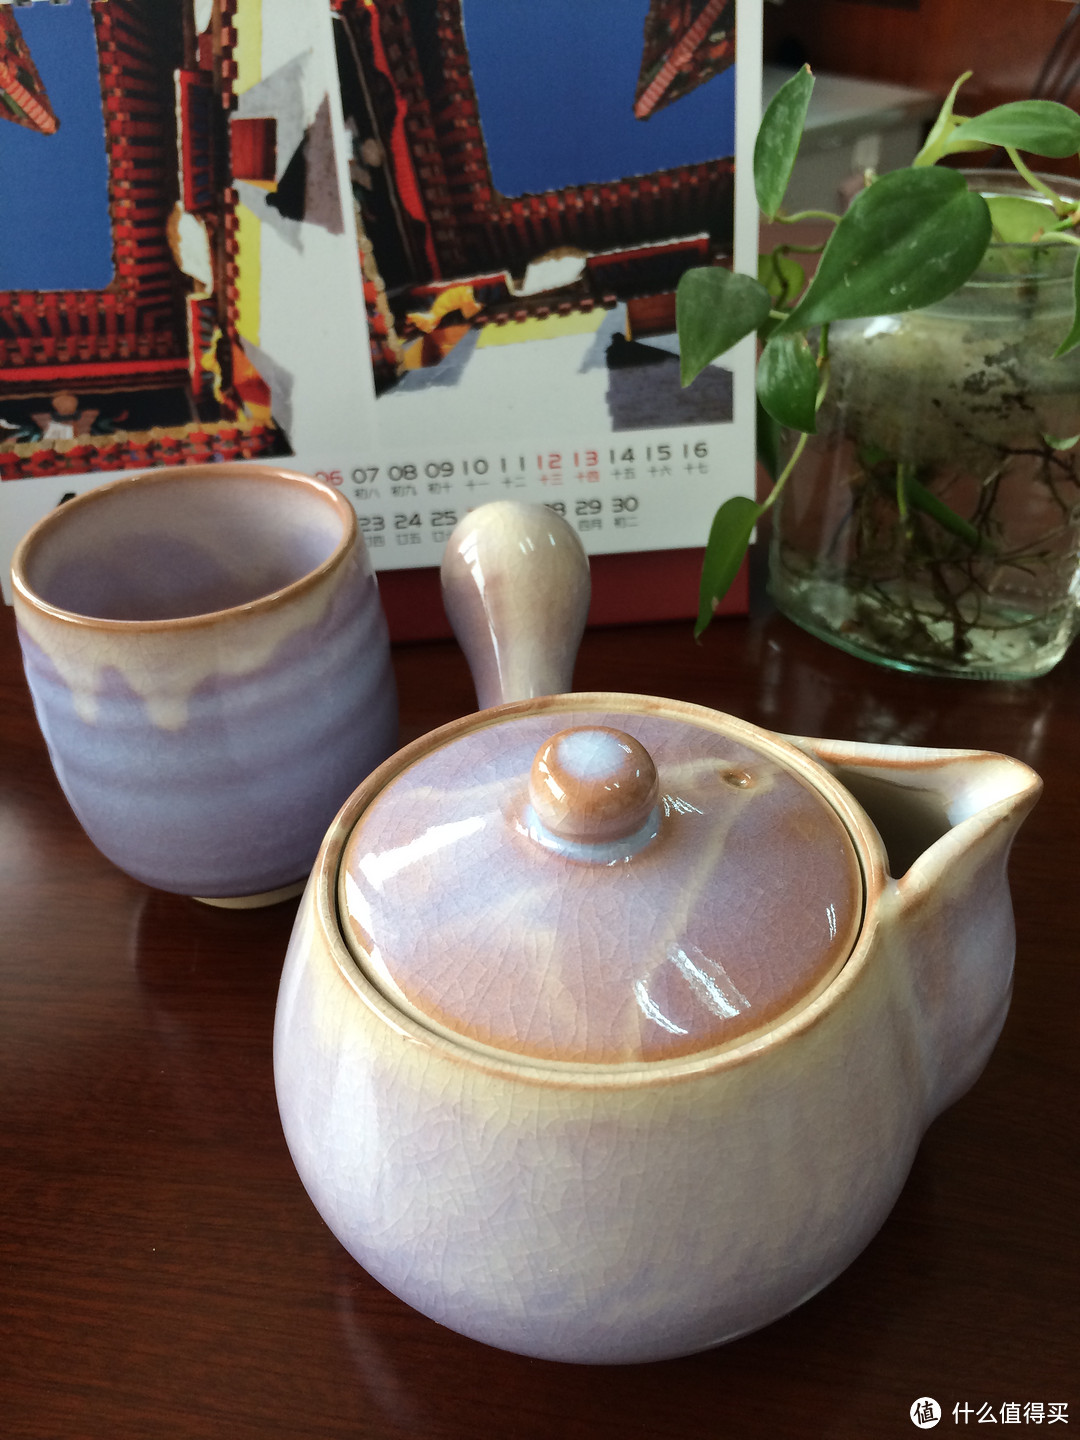 质朴天然：乐天日淘 荻烧 陶土茶具